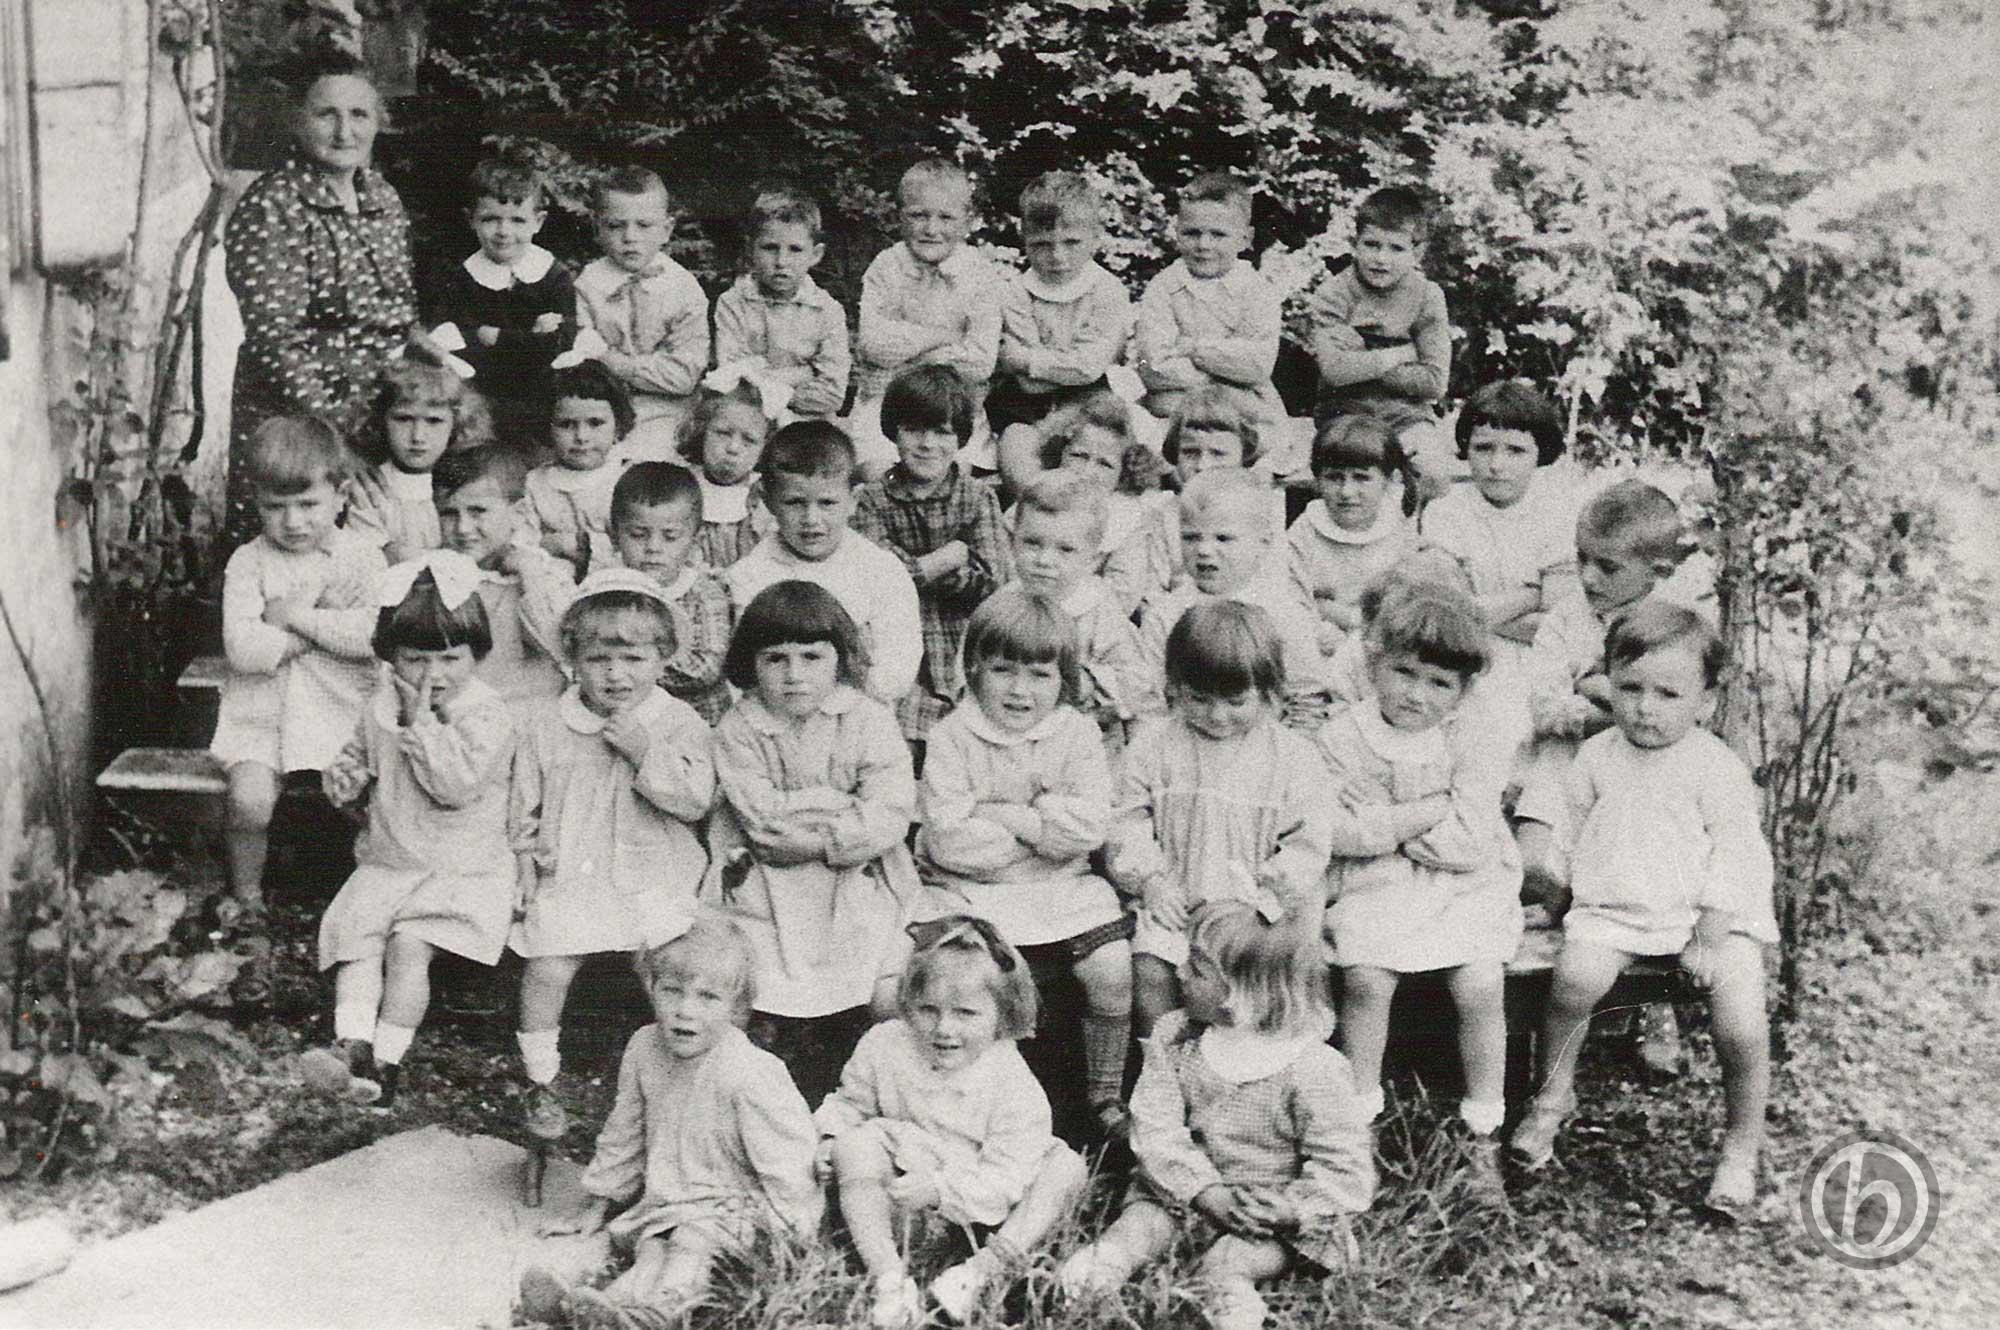 Foto Maurizio Soligo - 06 giugno 1961: bambini dell'asilo classi 1956, 1957, 1958 e 1959